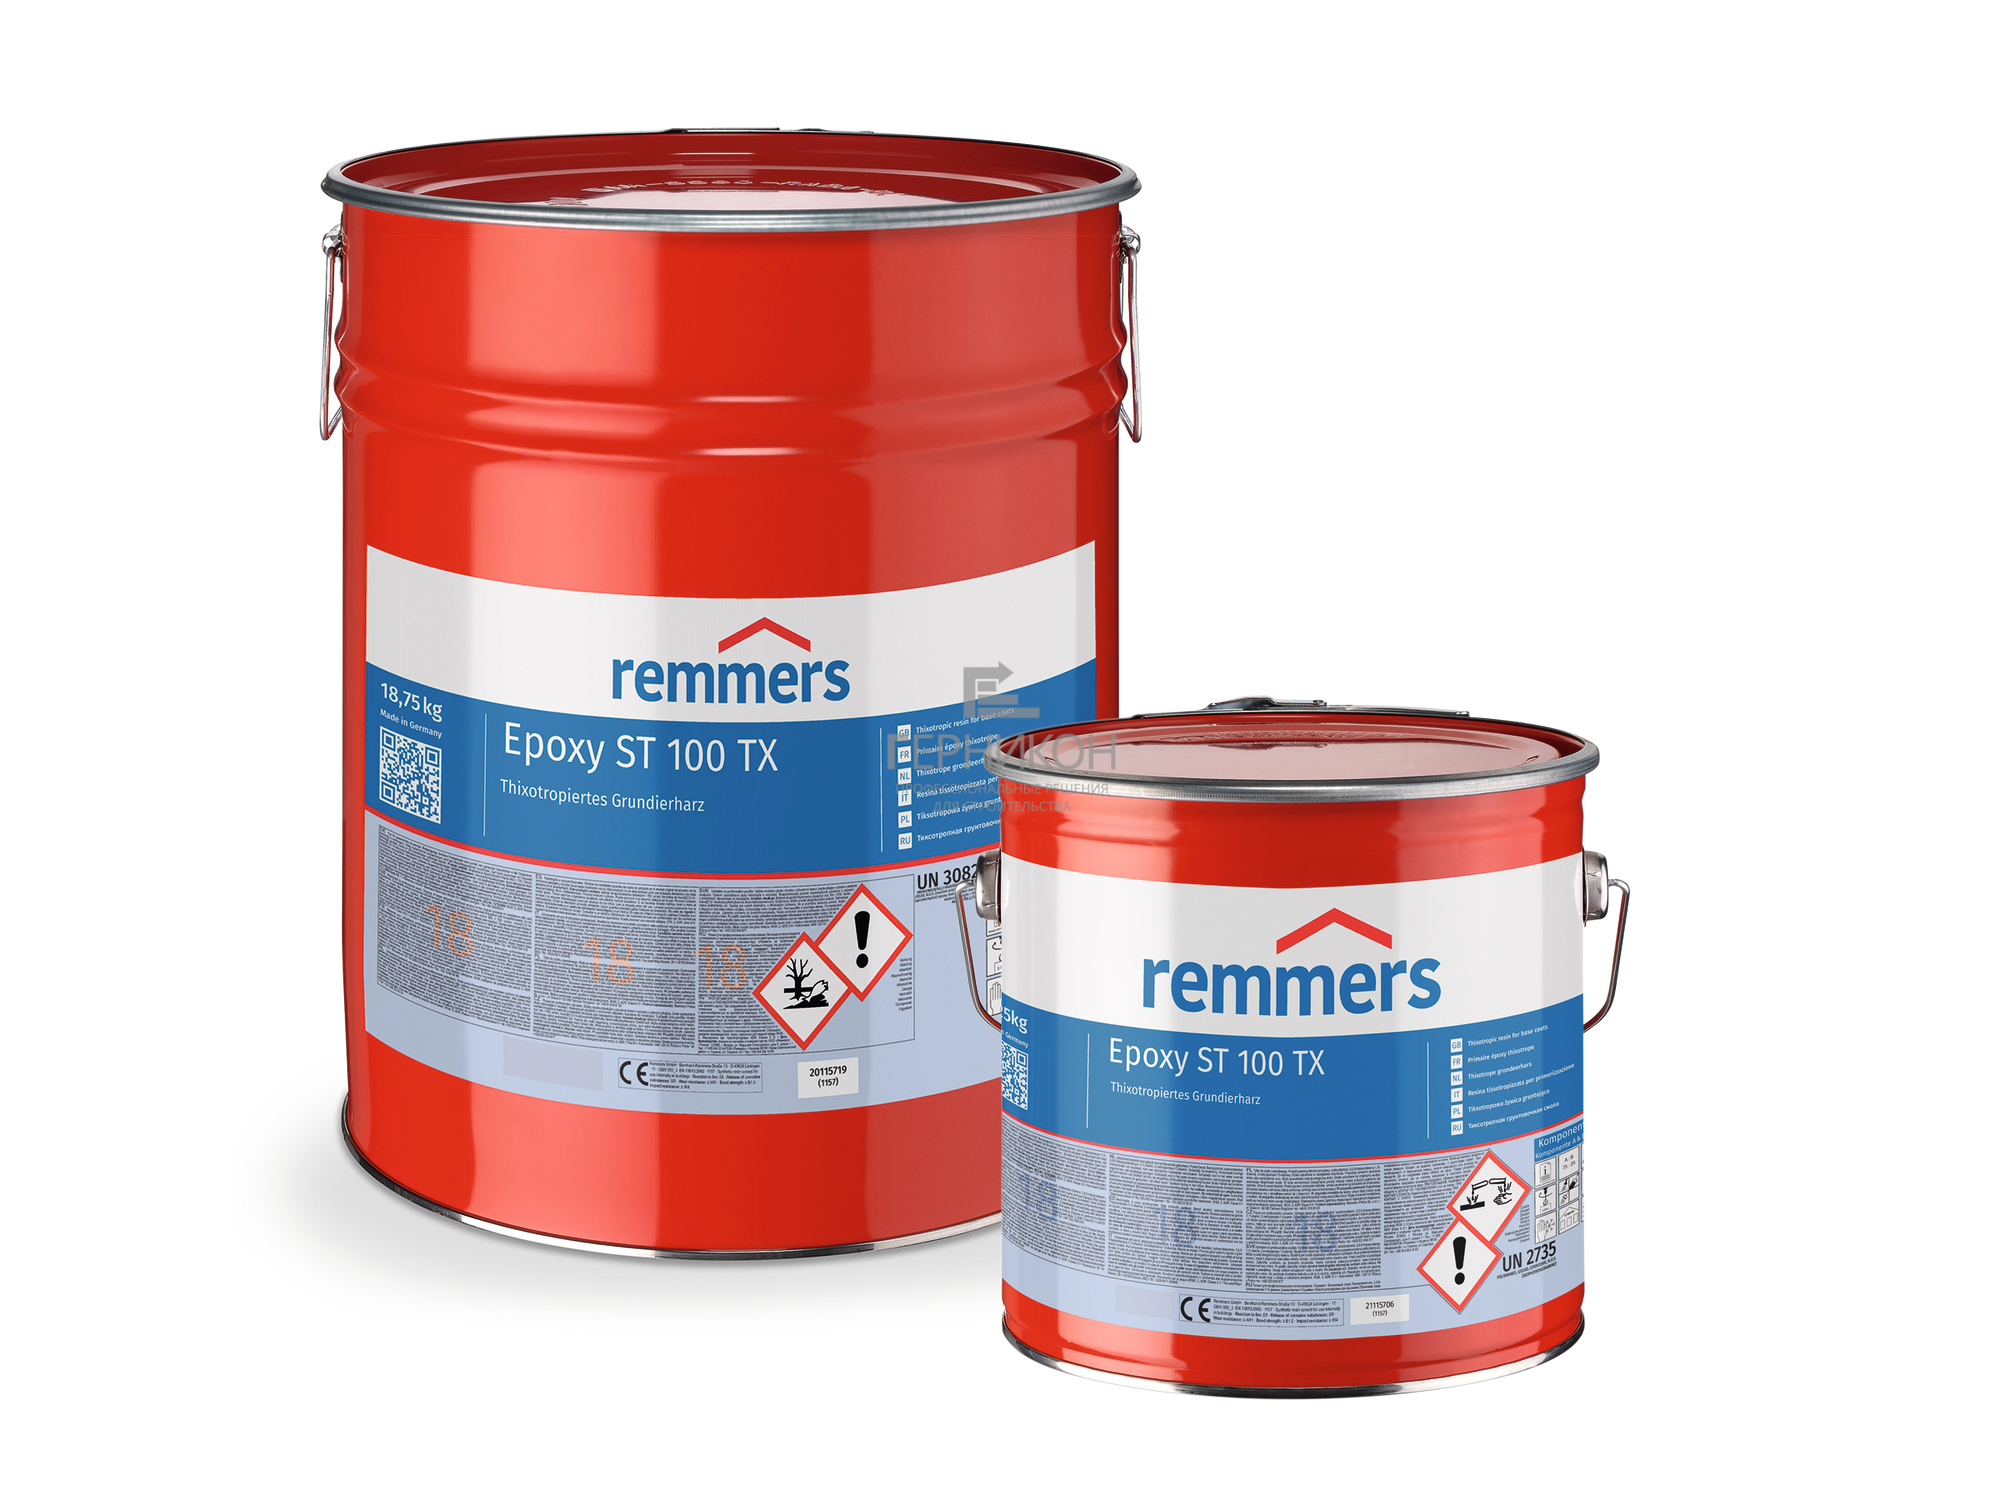 remmers epoxy st 100 tx(комп.a + комп.в) 10кг, 25кг (реммерс эпокси ст 100 тикс(комп.a + комп.в) 10кг, 25кг)